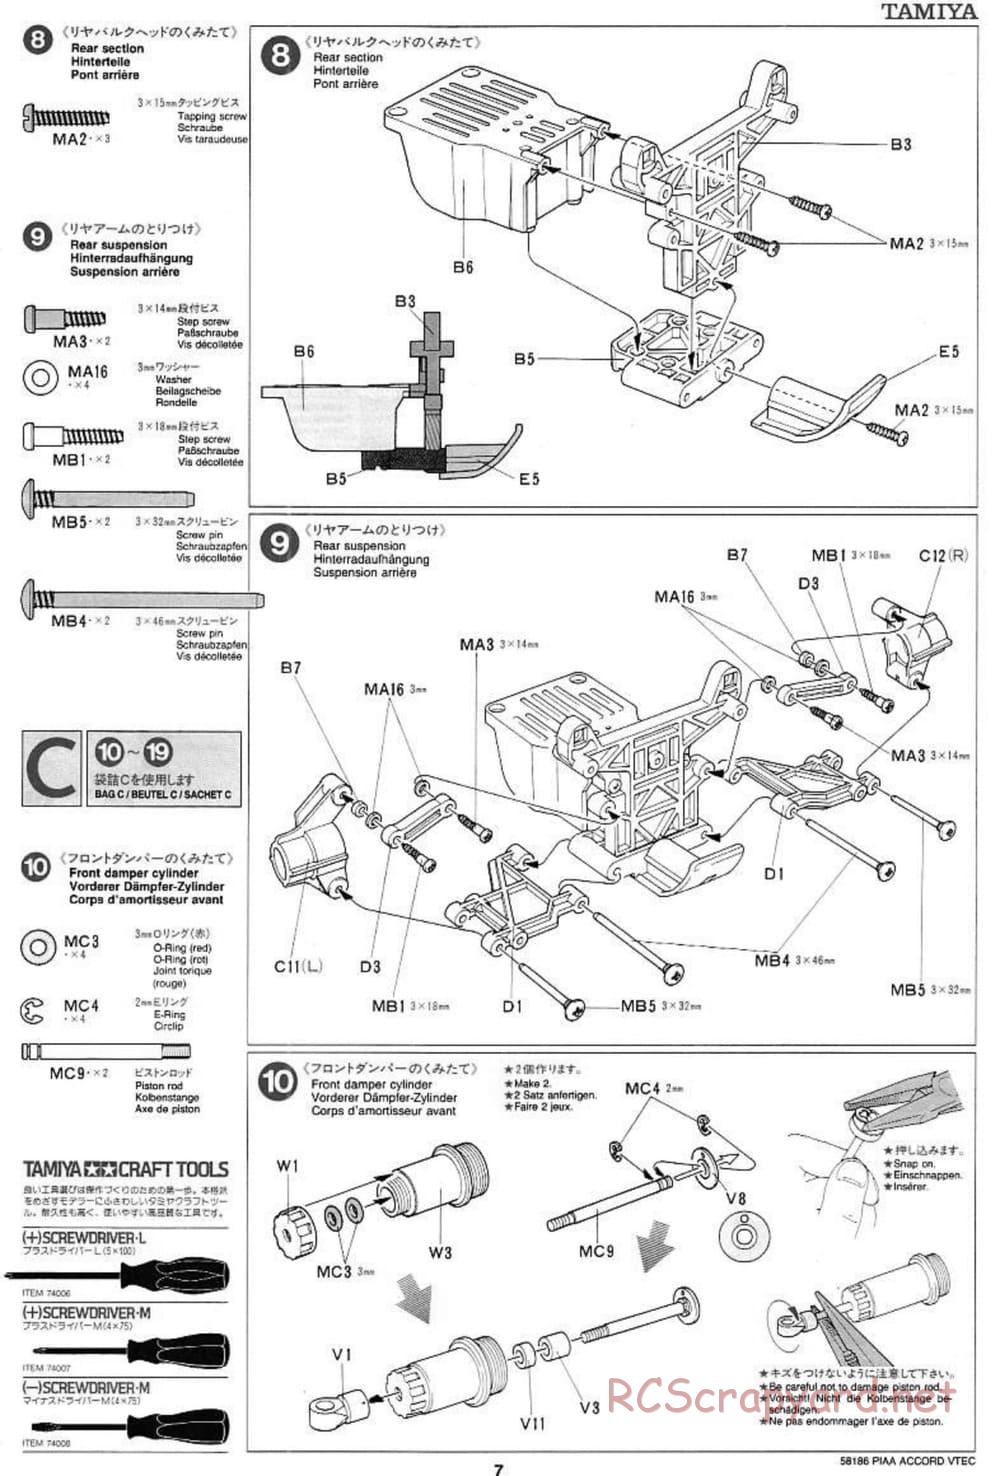 Tamiya - PIAA Accord VTEC - FF-01 Chassis - Manual - Page 7